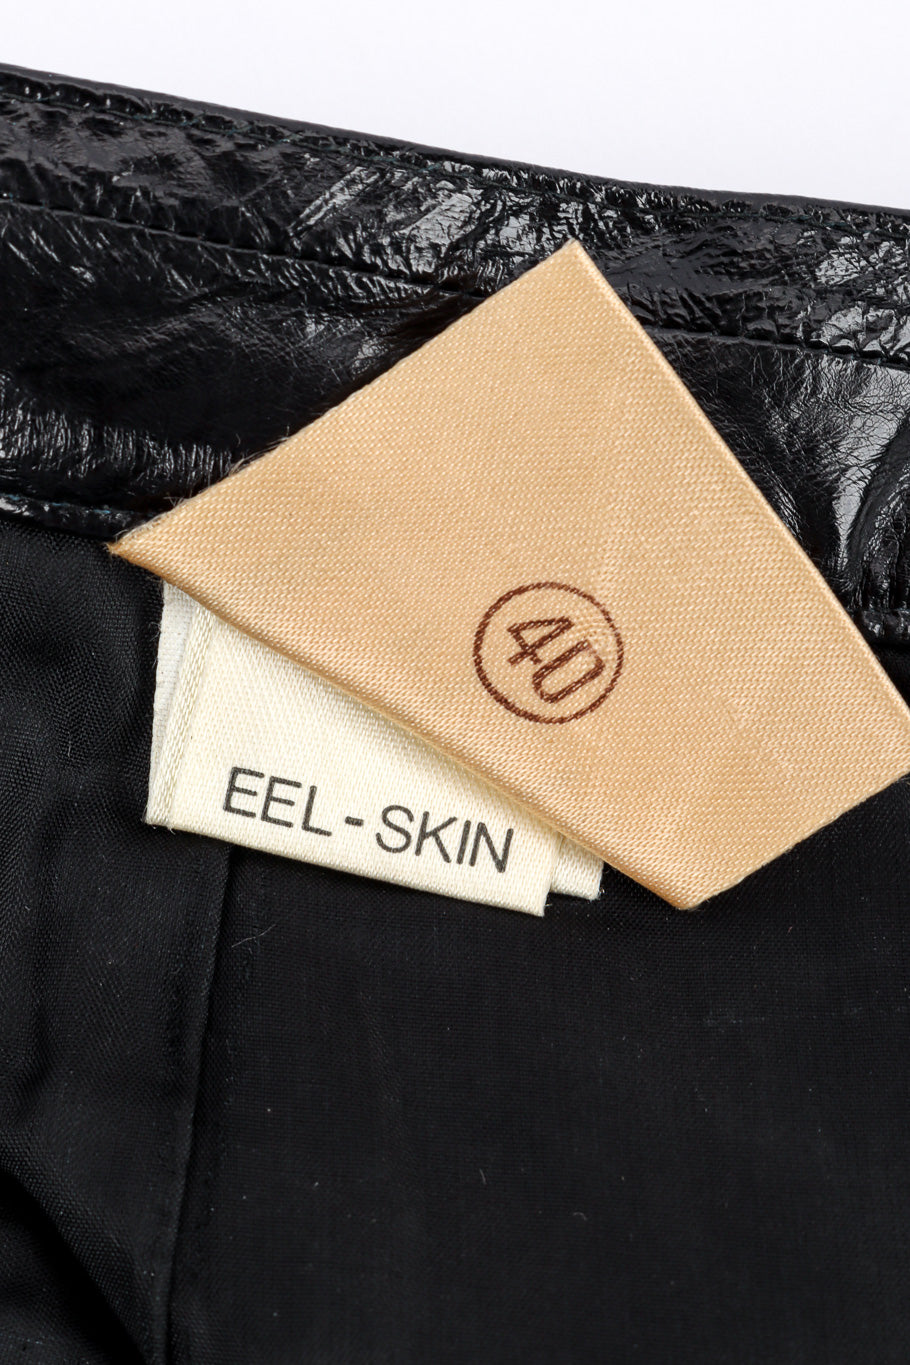 Vintage Krizia Eel Patent Leather Skirt size and content label closeup @recessla